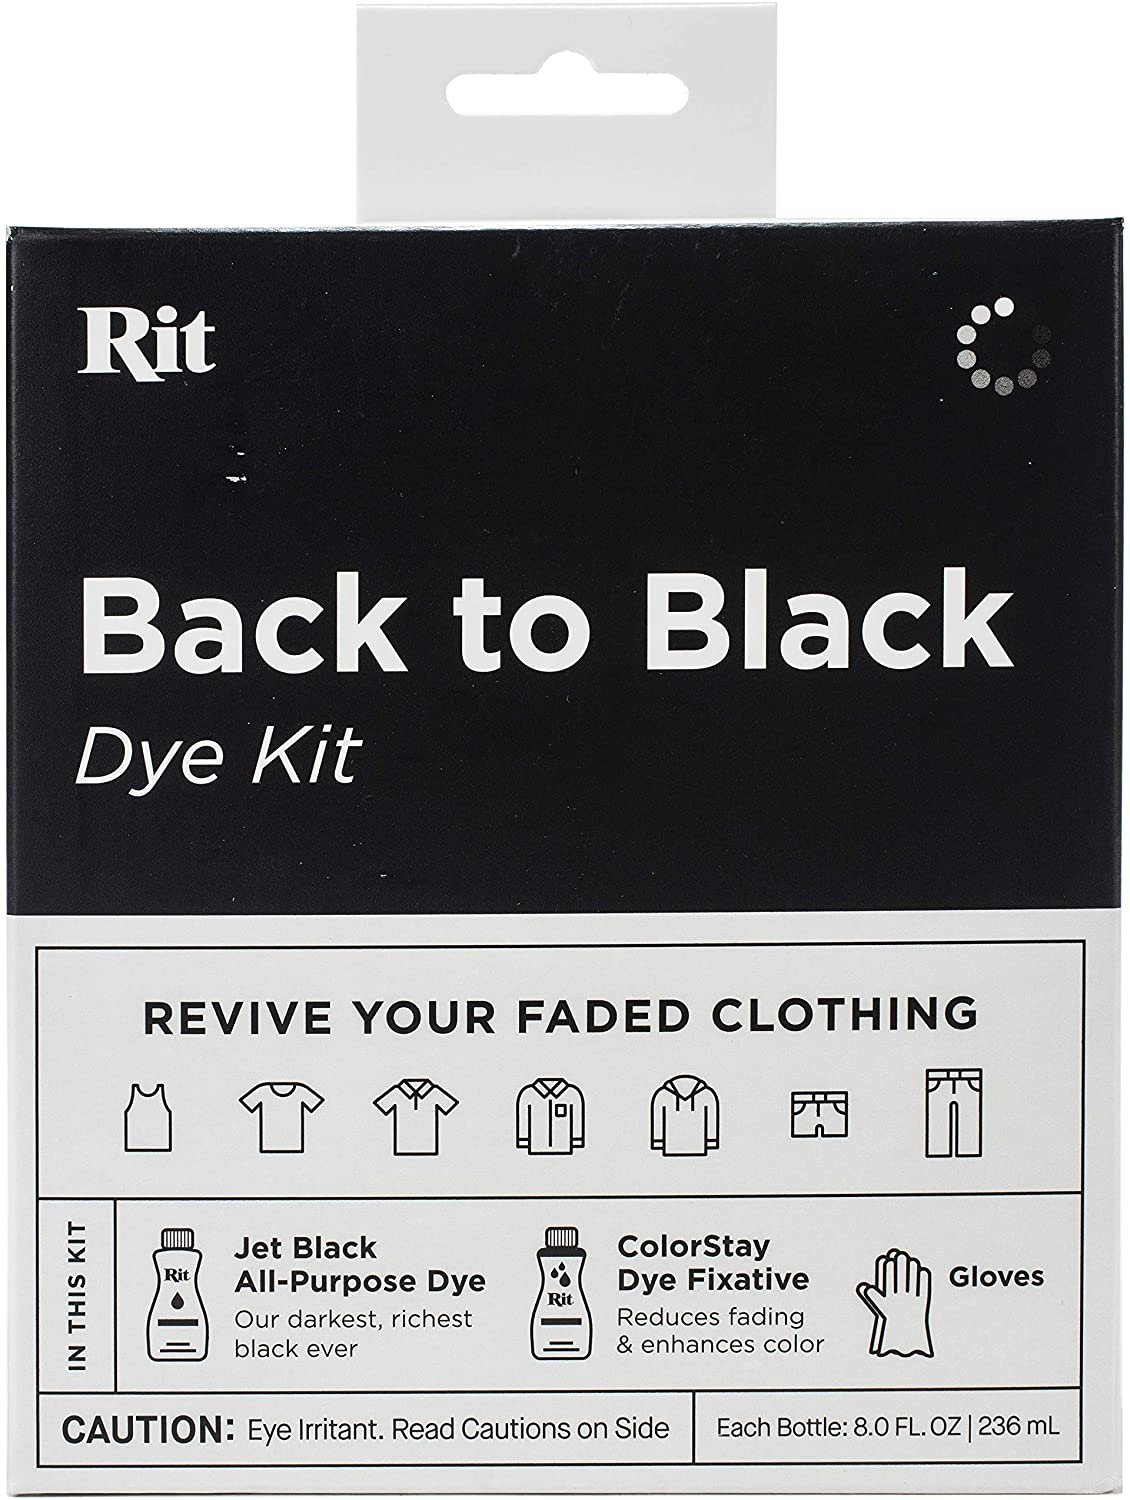 Rit Black All Purpose Dye, 8.0 fl oz